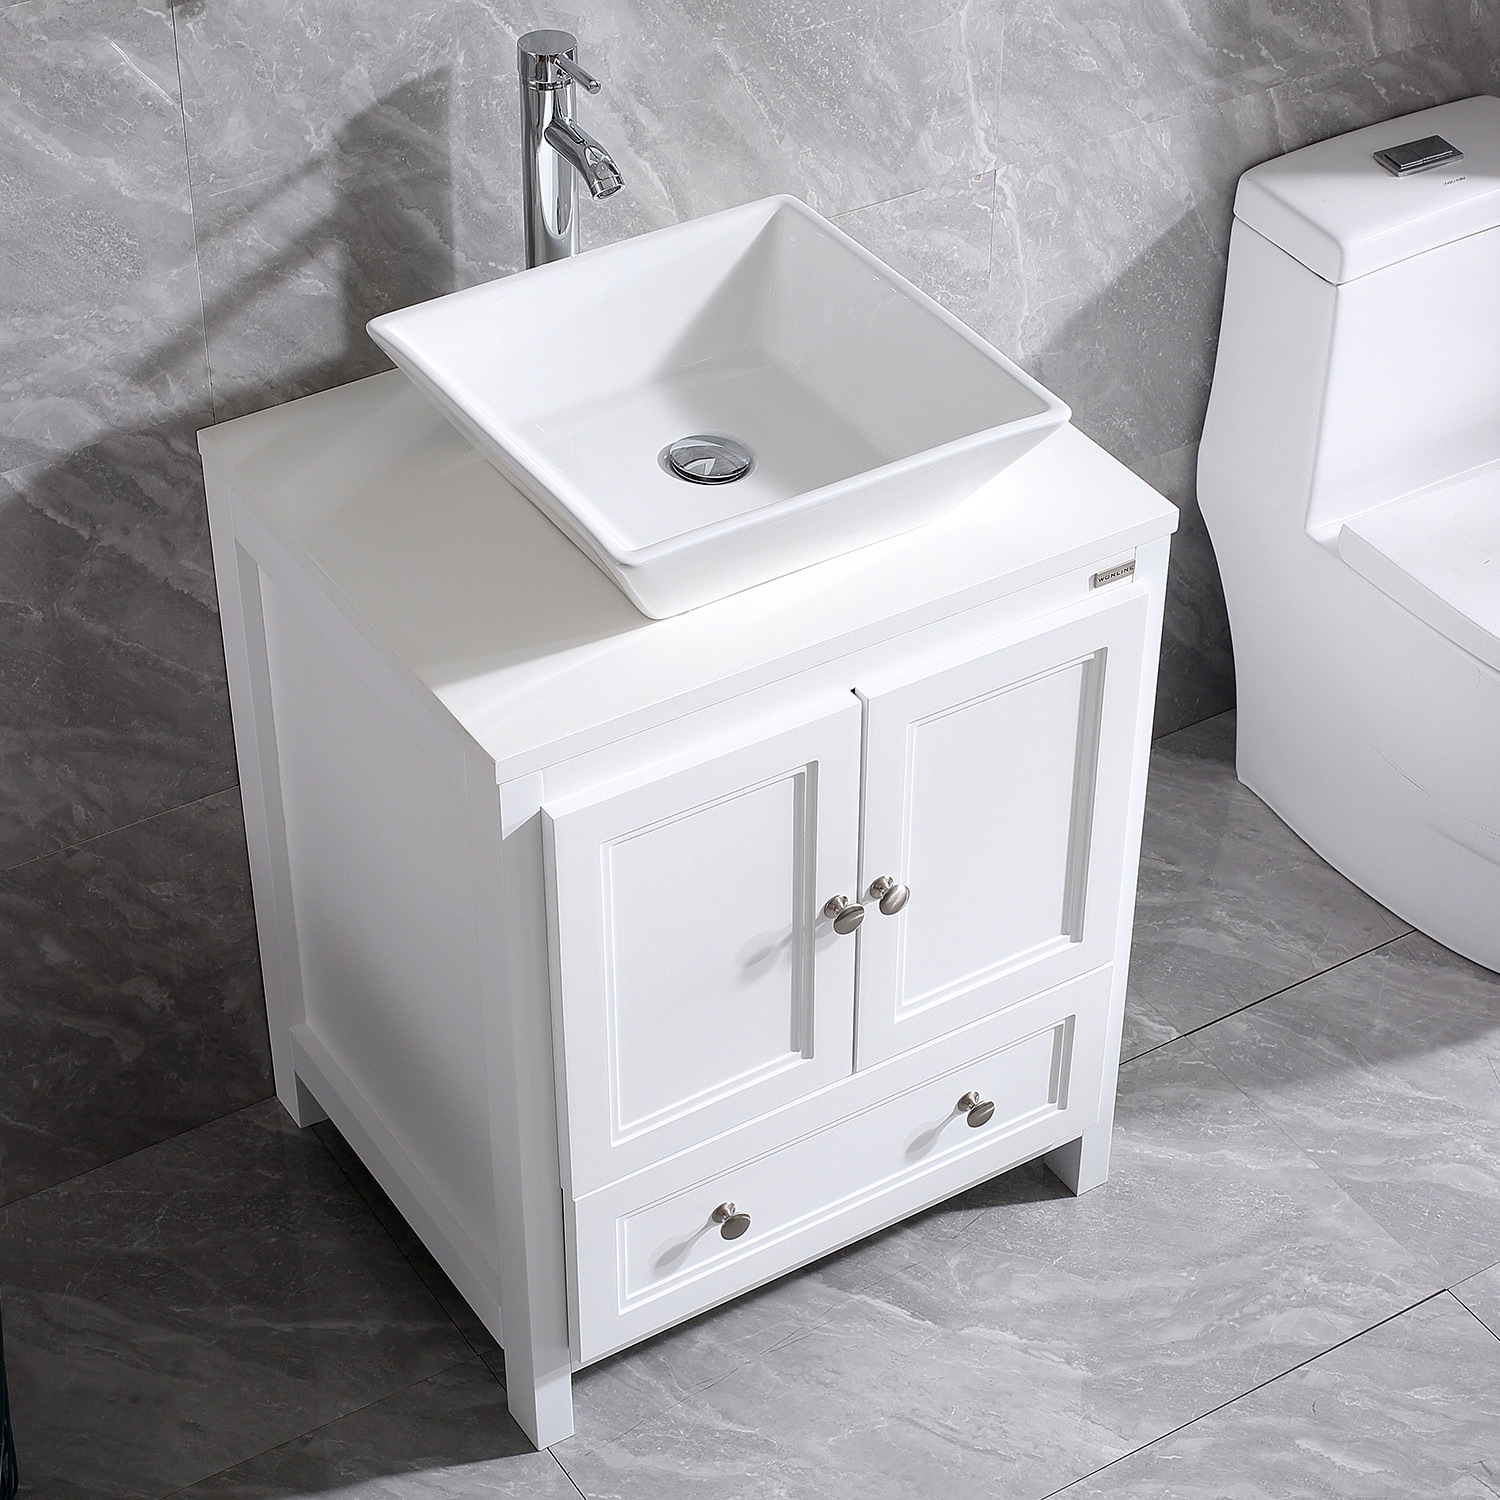 WONLINE 24 In. bathroom vanity set 24-in White Single Sink Bathroom ...